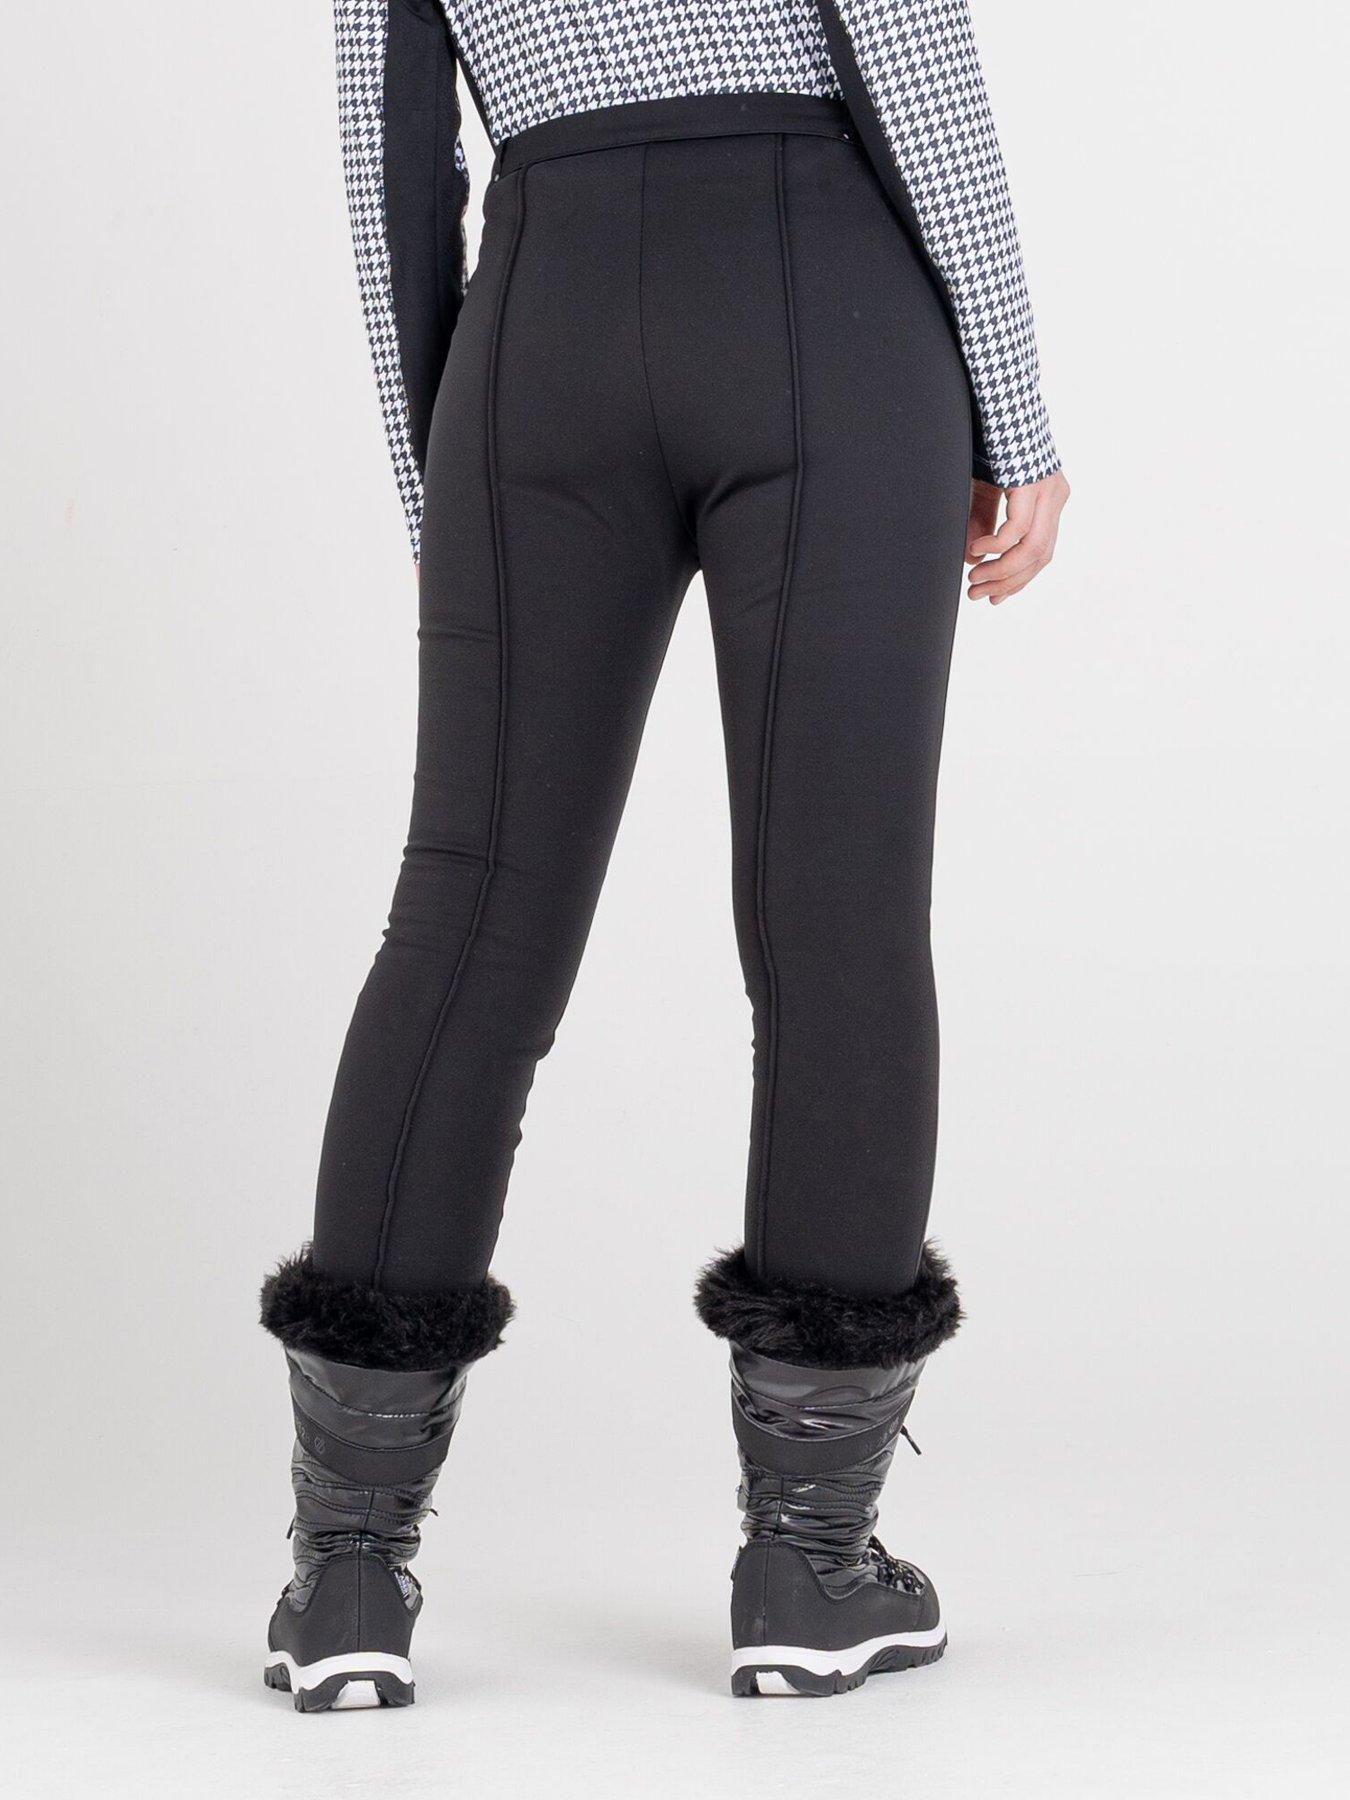  Sleek Full Length Waterproof Ski Pants - Black